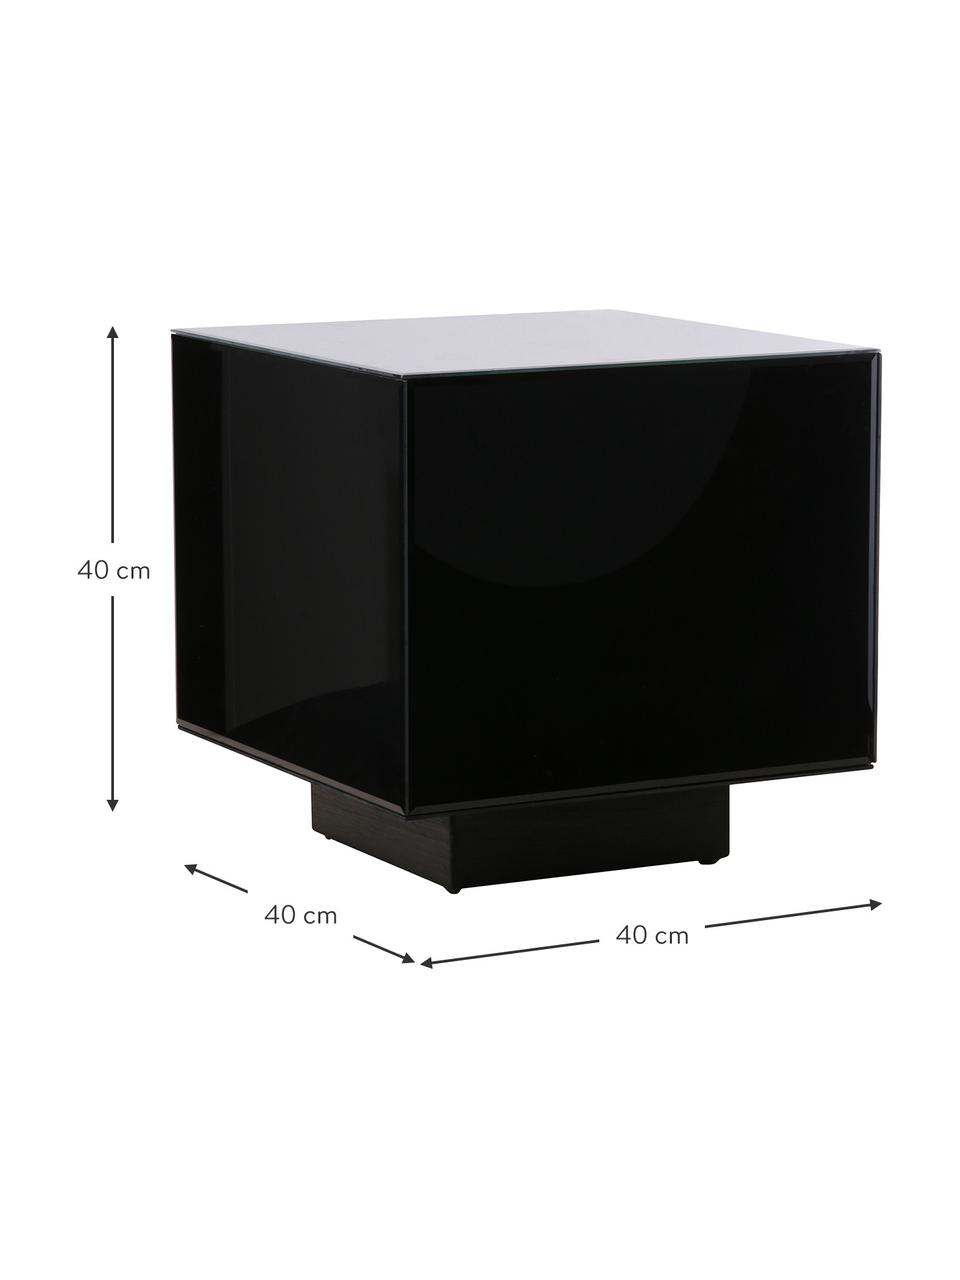 Glas-Beistelltisch Block mit Spiegel-Effekt in Schwarz, Korpus: Glas, Schwarz, B 40 x H 40 cm